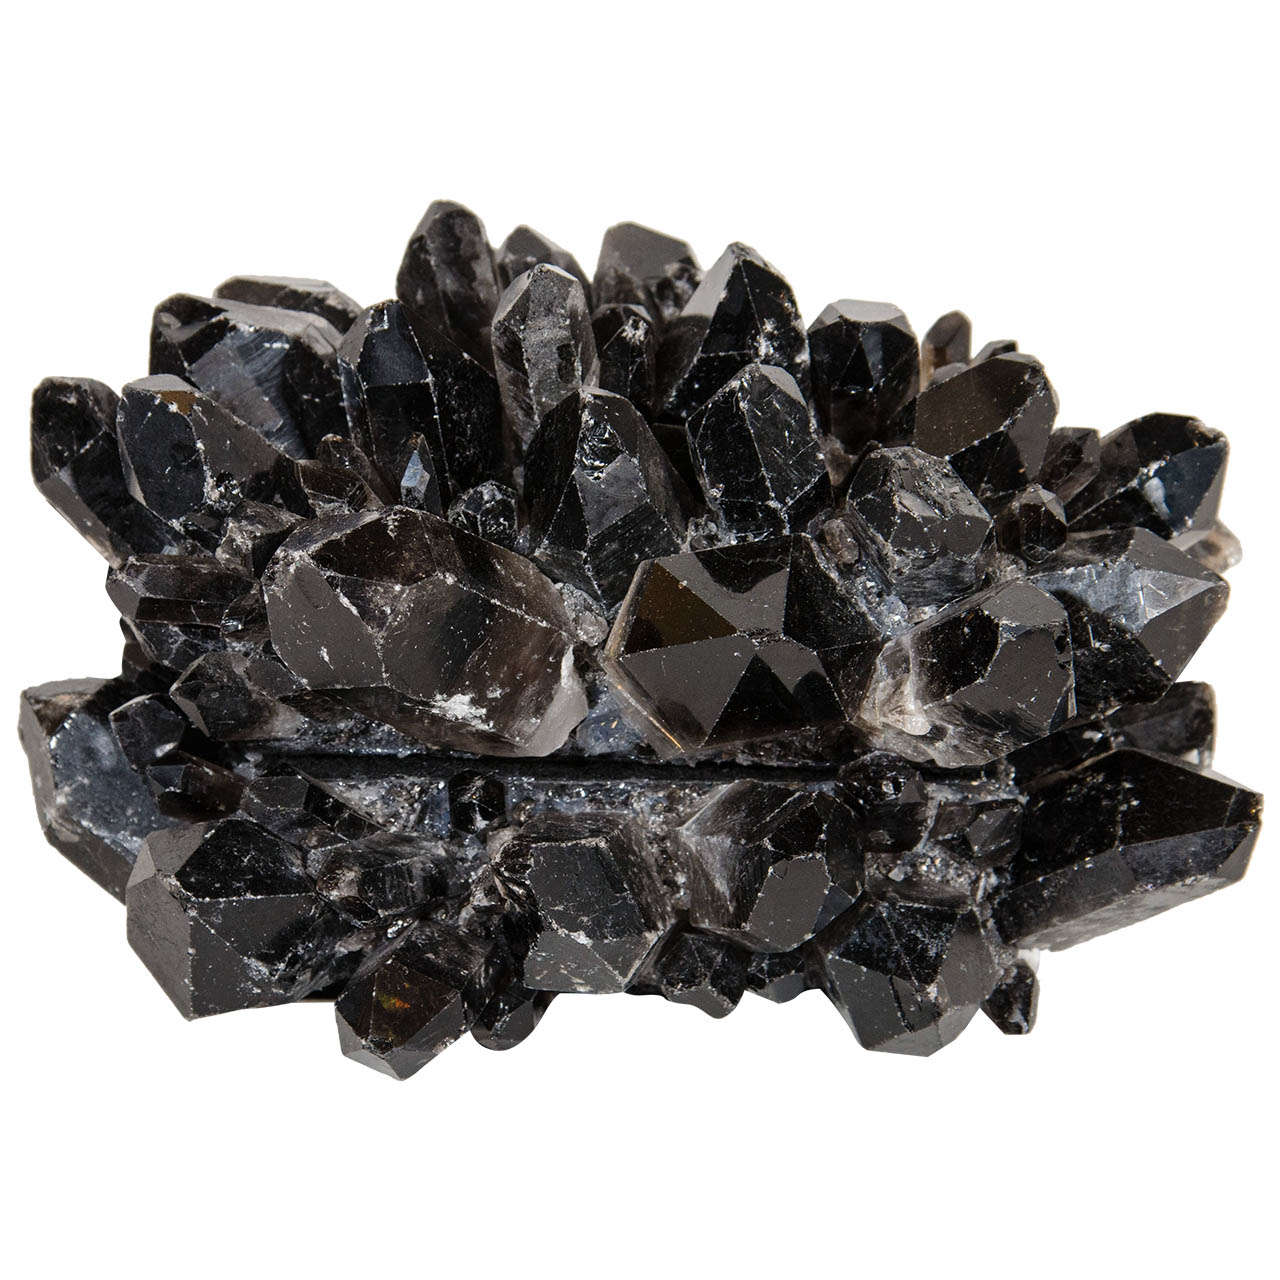 Exquisite and Rare Black Quartz Crystal Decorative Box